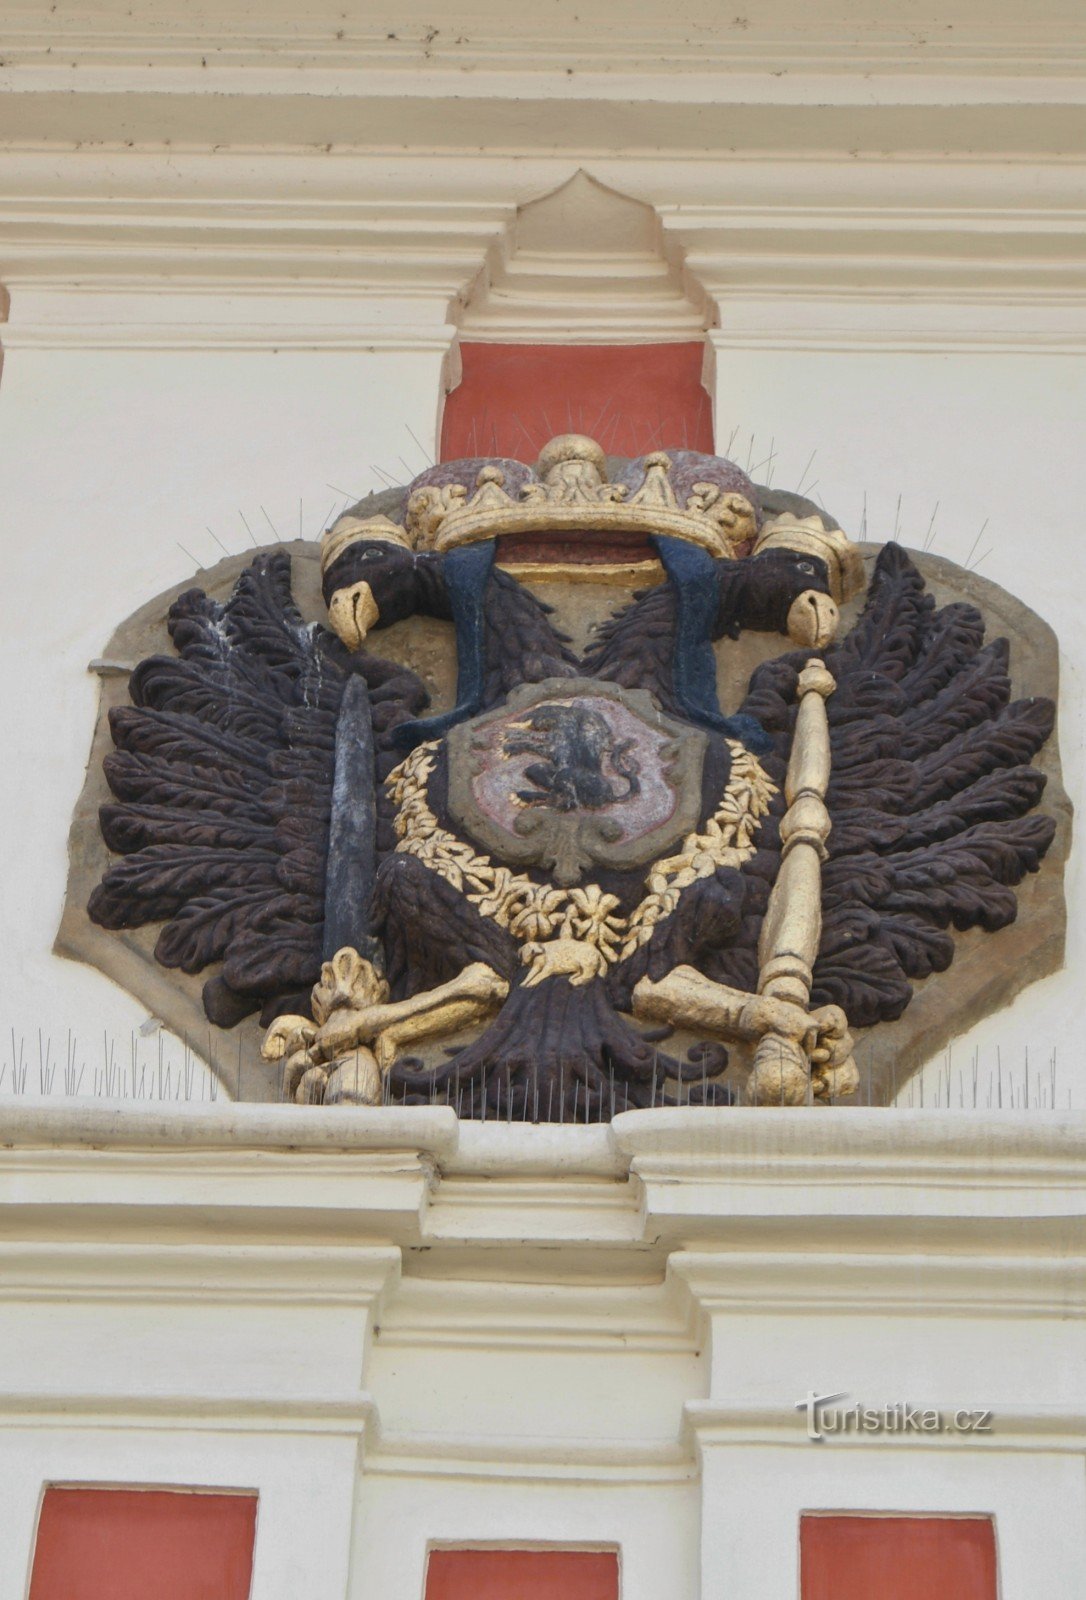 judicial eagle on the castle facade